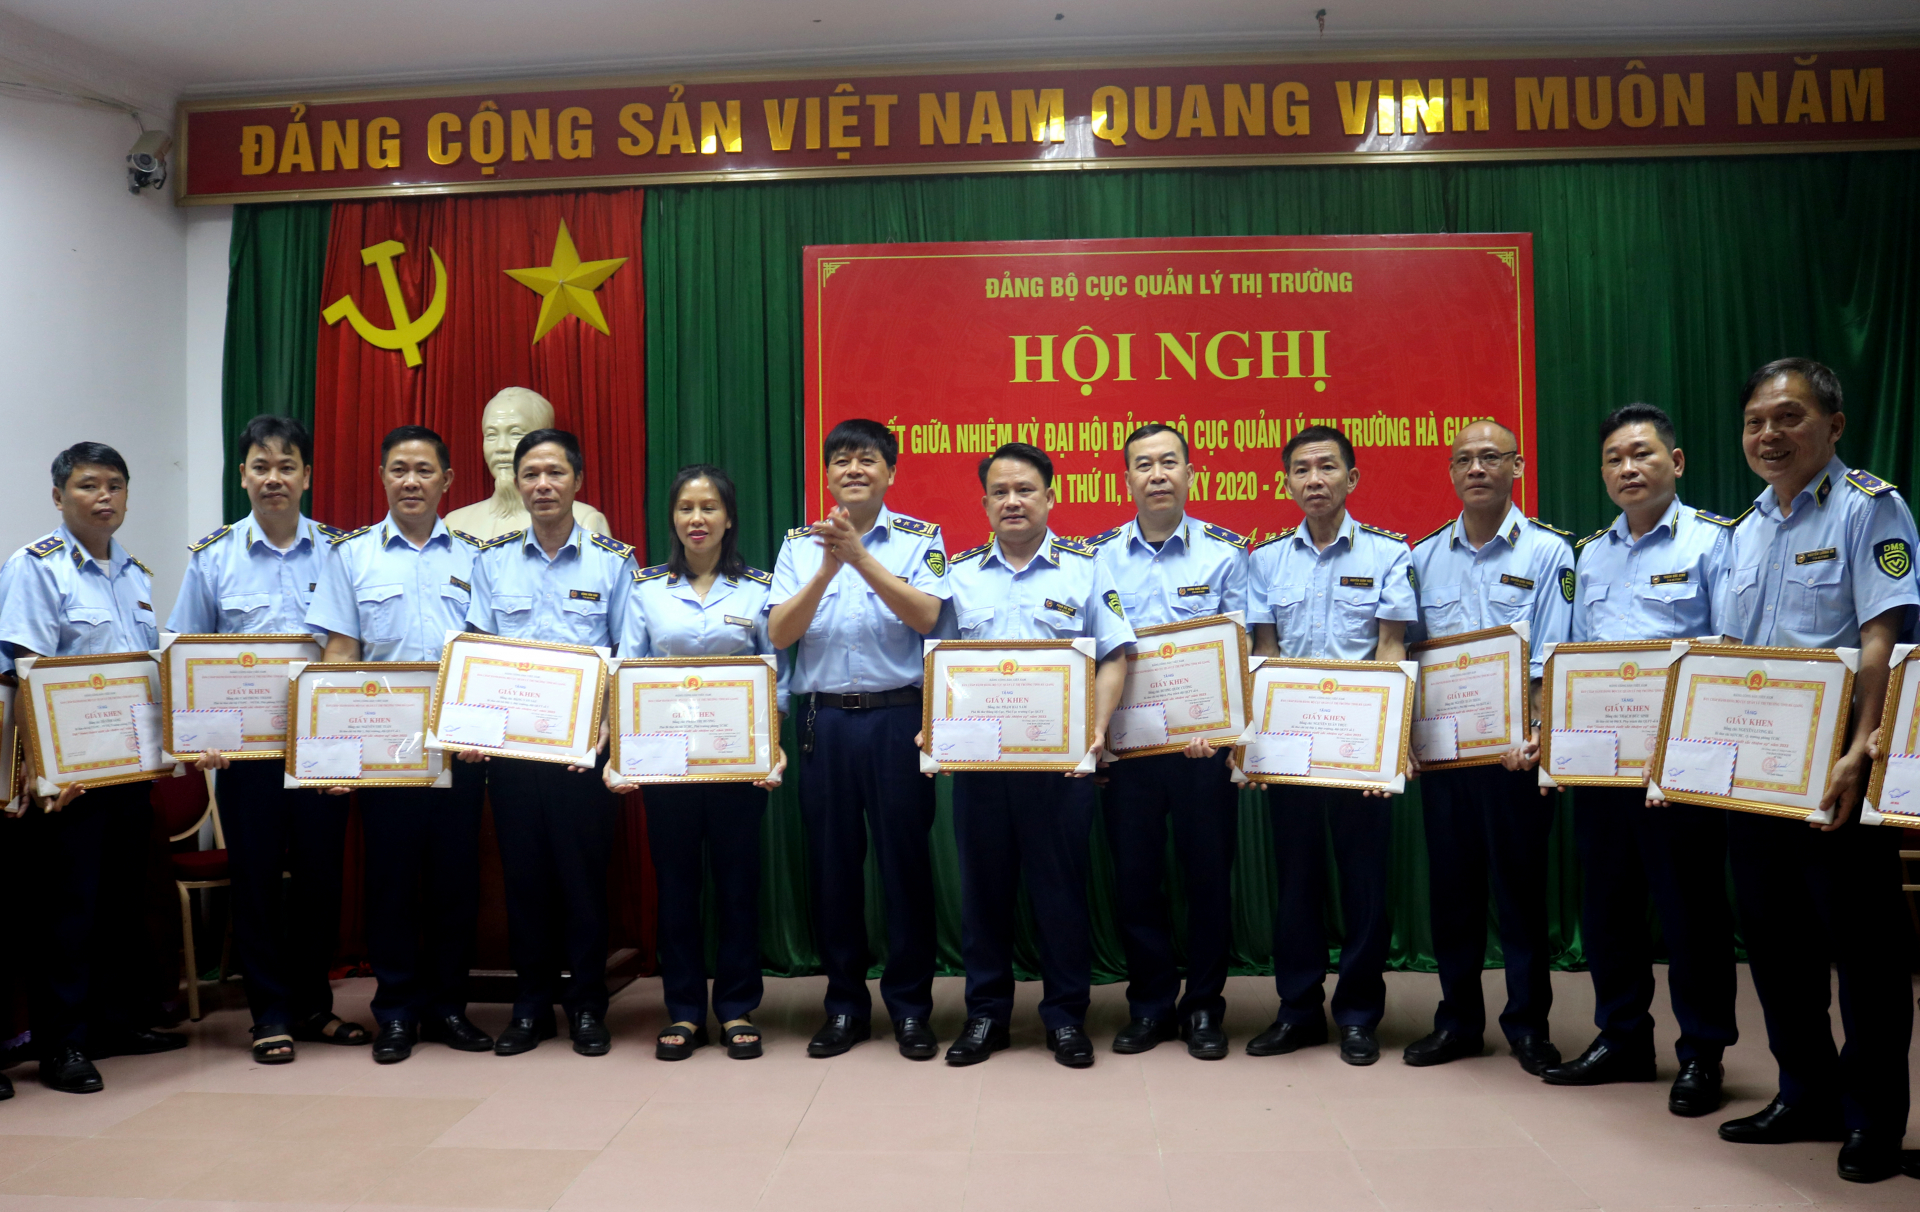 Lãnh đạo Đảng ủy Cục Quản lý thị trường Hà Giang tặng Giấy khen cho các đảng viên.

